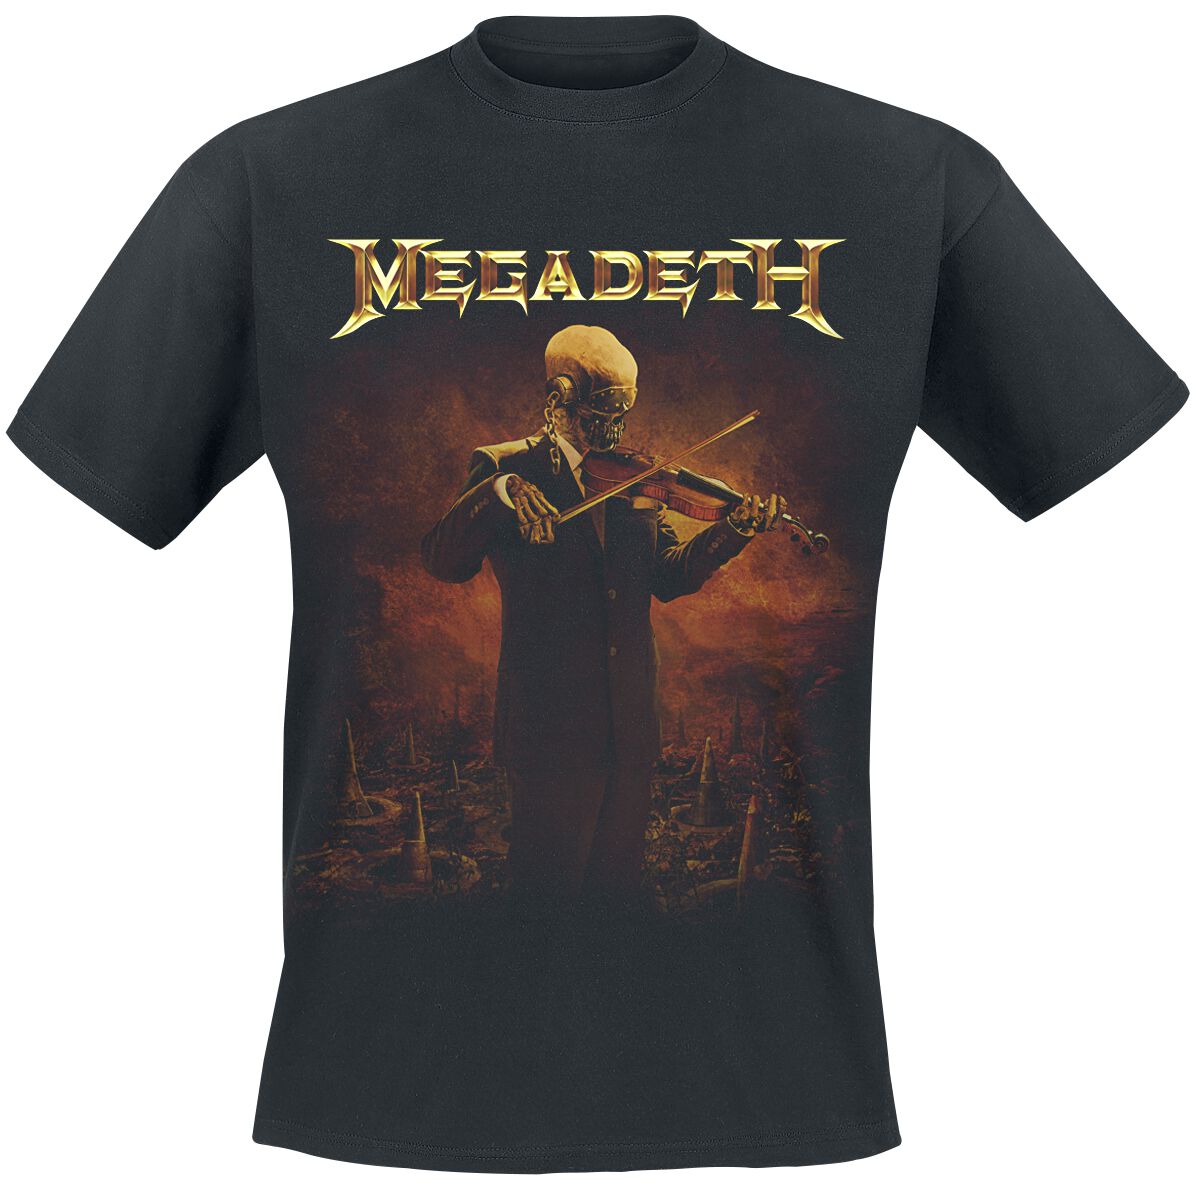 Megadeth T-Shirt - Symphony For Destruction - S bis XXL - für Männer - Größe L - schwarz  - Lizenziertes Merchandise!